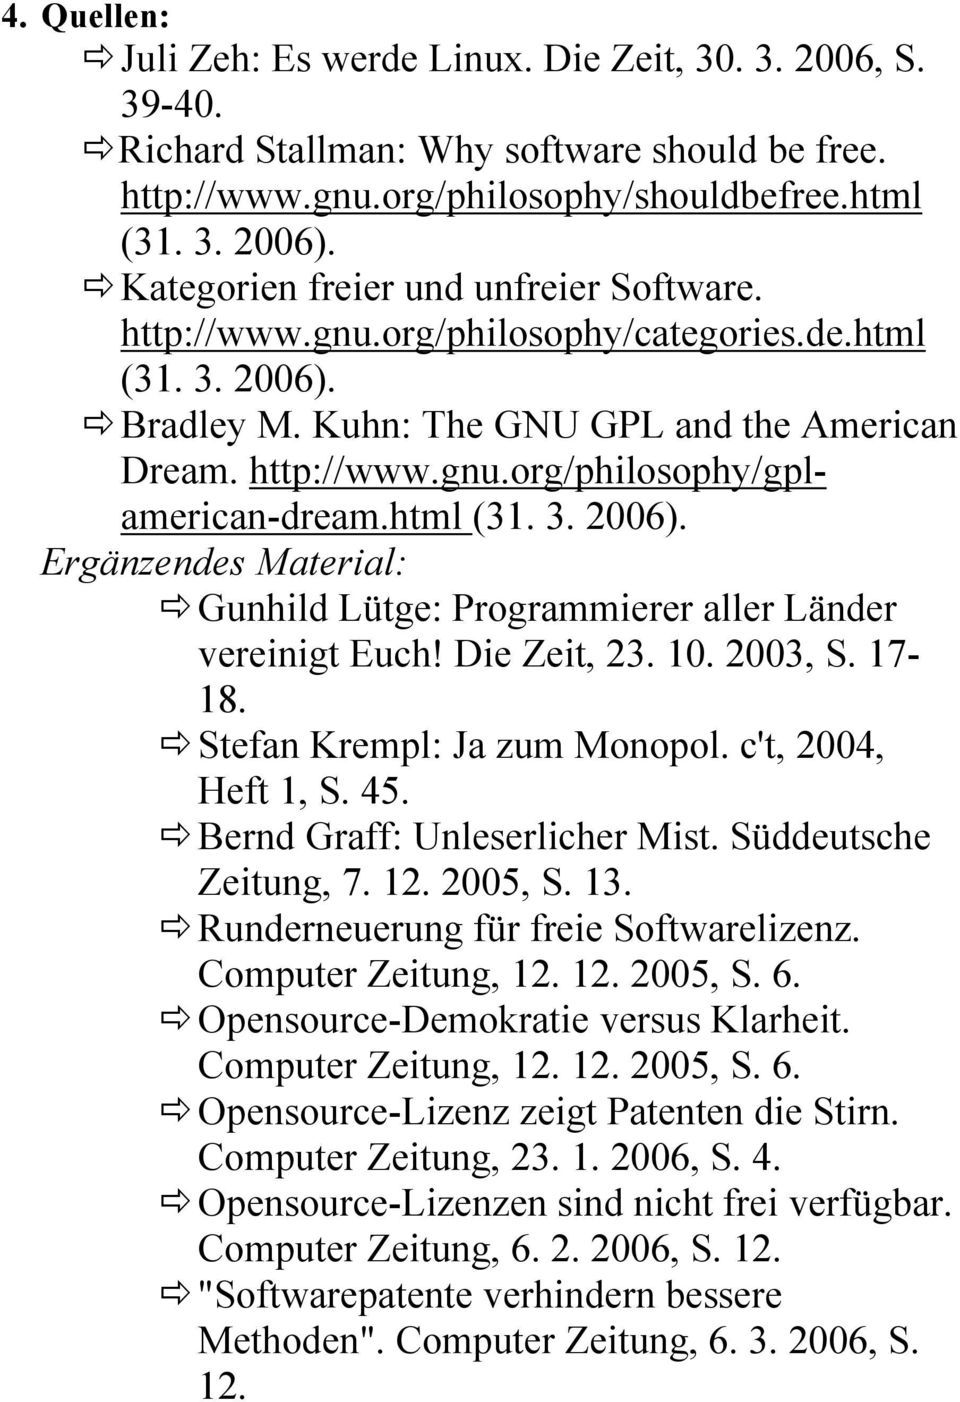 html (31. 3. 2006). Ergänzendes Material: Gunhild Lütge: Programmierer aller Länder vereinigt Euch! Die Zeit, 23. 10. 2003, S. 17-18. Stefan Krempl: Ja zum Monopol. c't, 2004, Heft 1, S. 45.